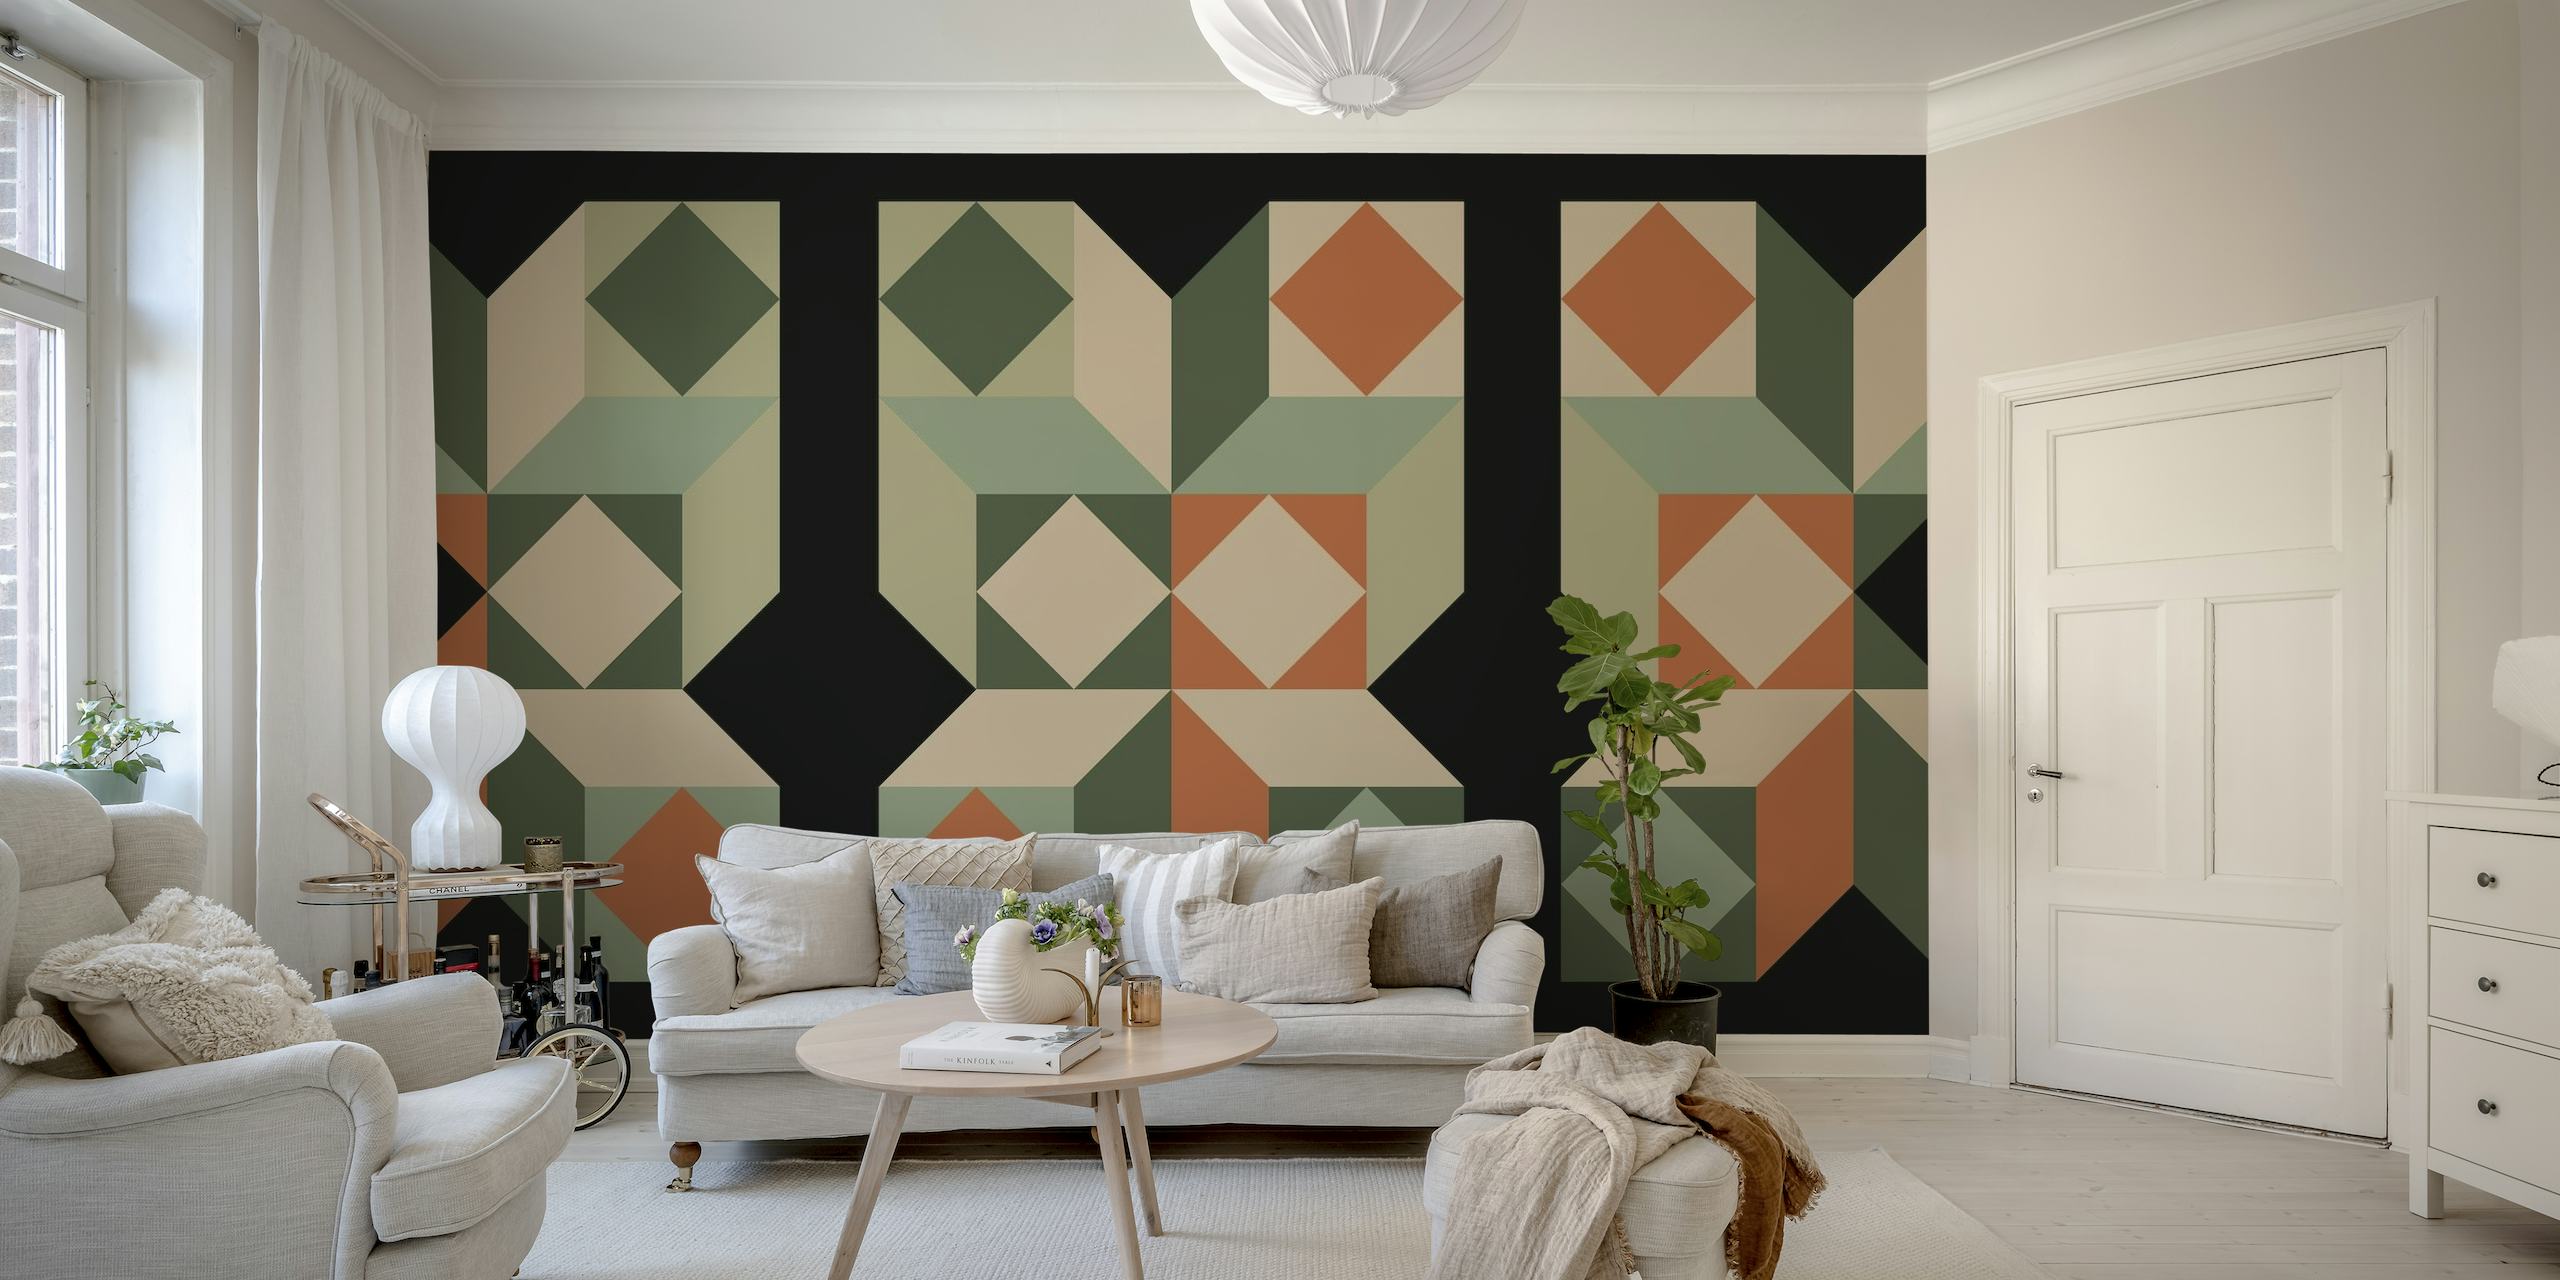 Midcentury Bauhaus-inspirert veggmaleri med geometriske mønstre i grønne, oransje og nøytrale toner.